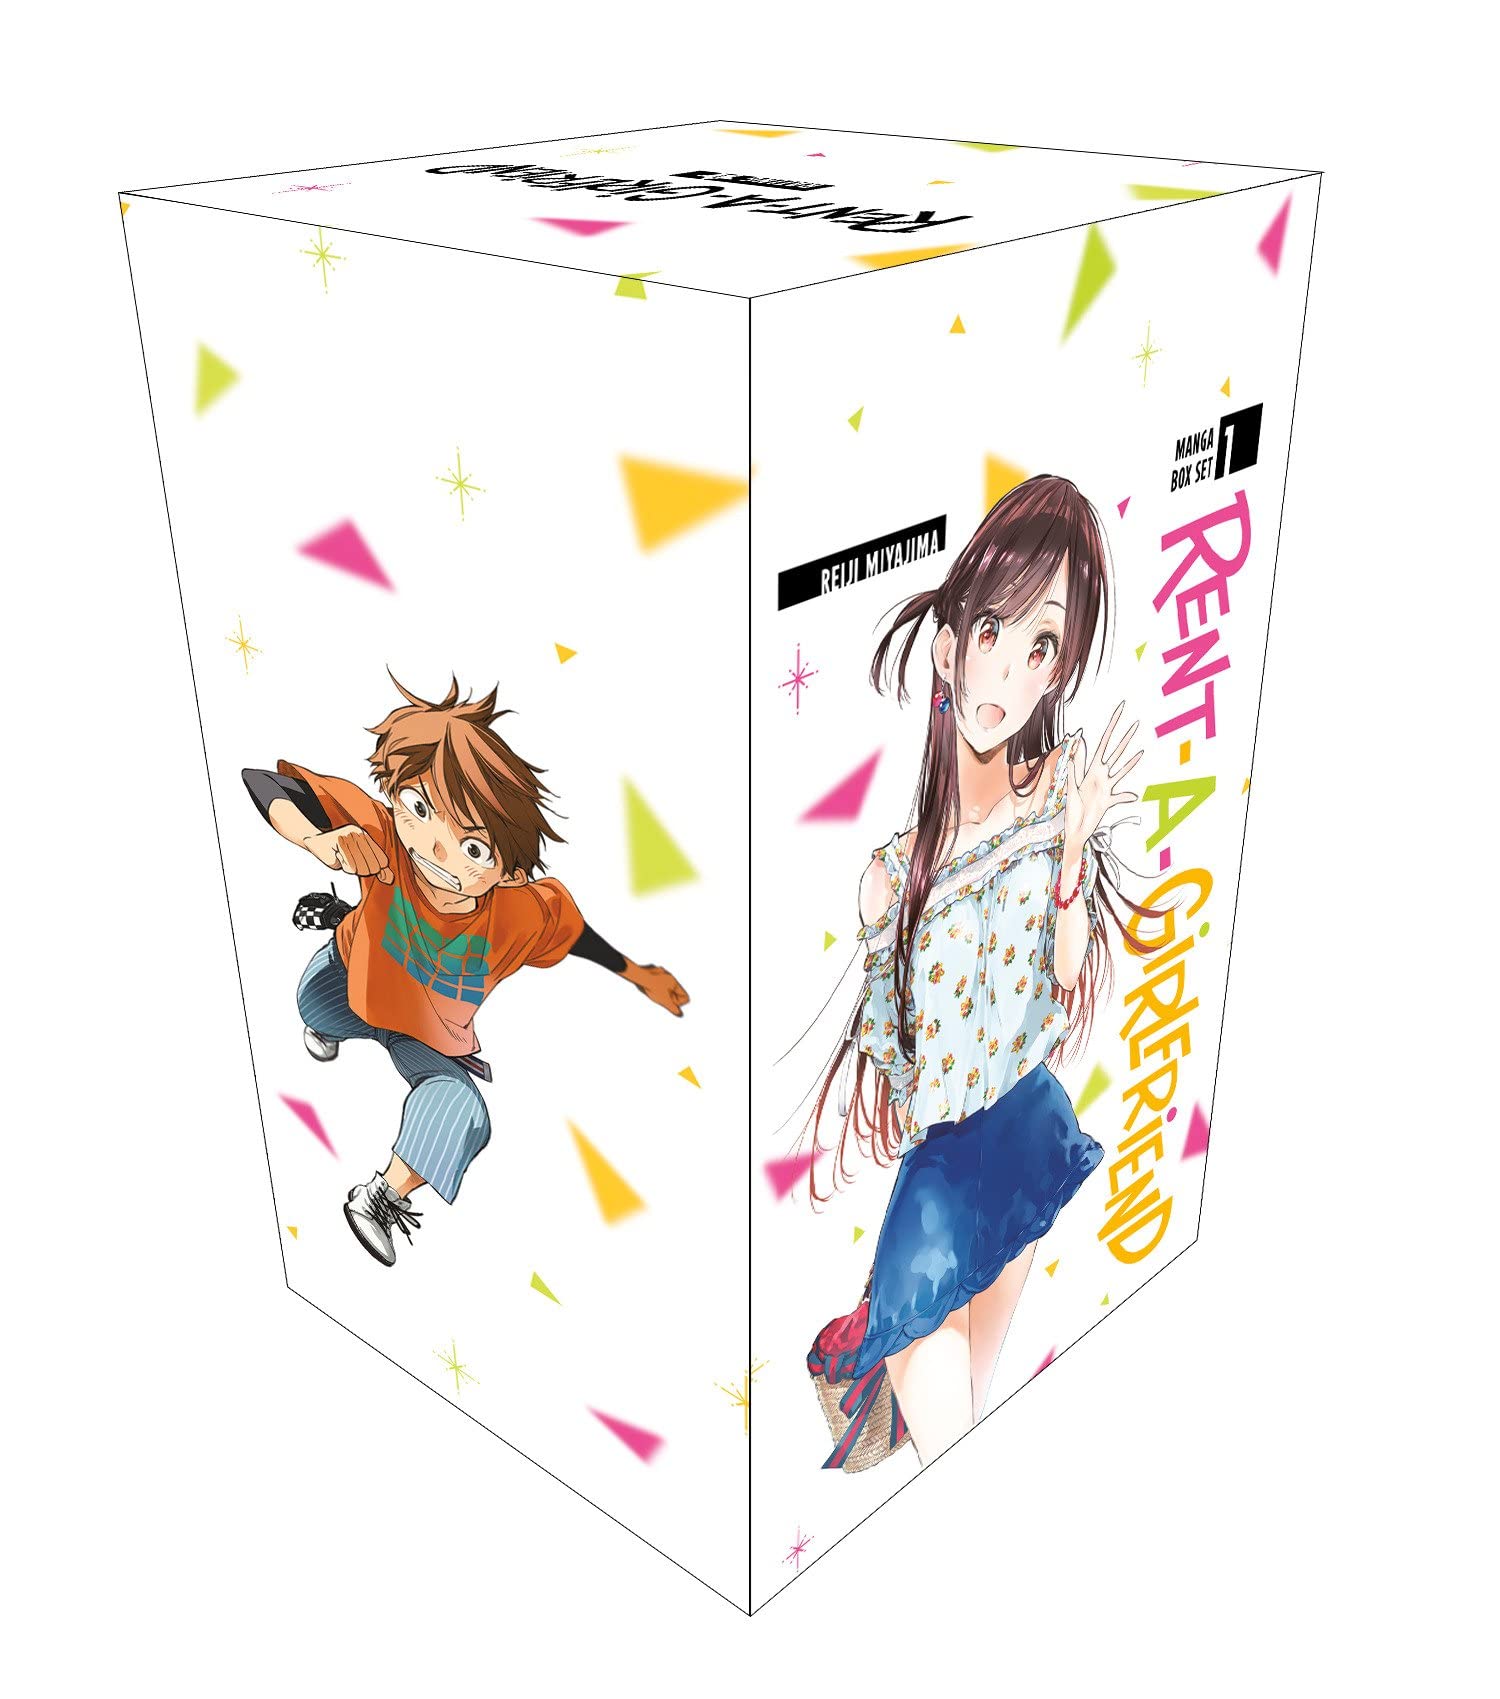 Rent-A-Girlfriend Manga Box Set 1 | Reiji Miyajima